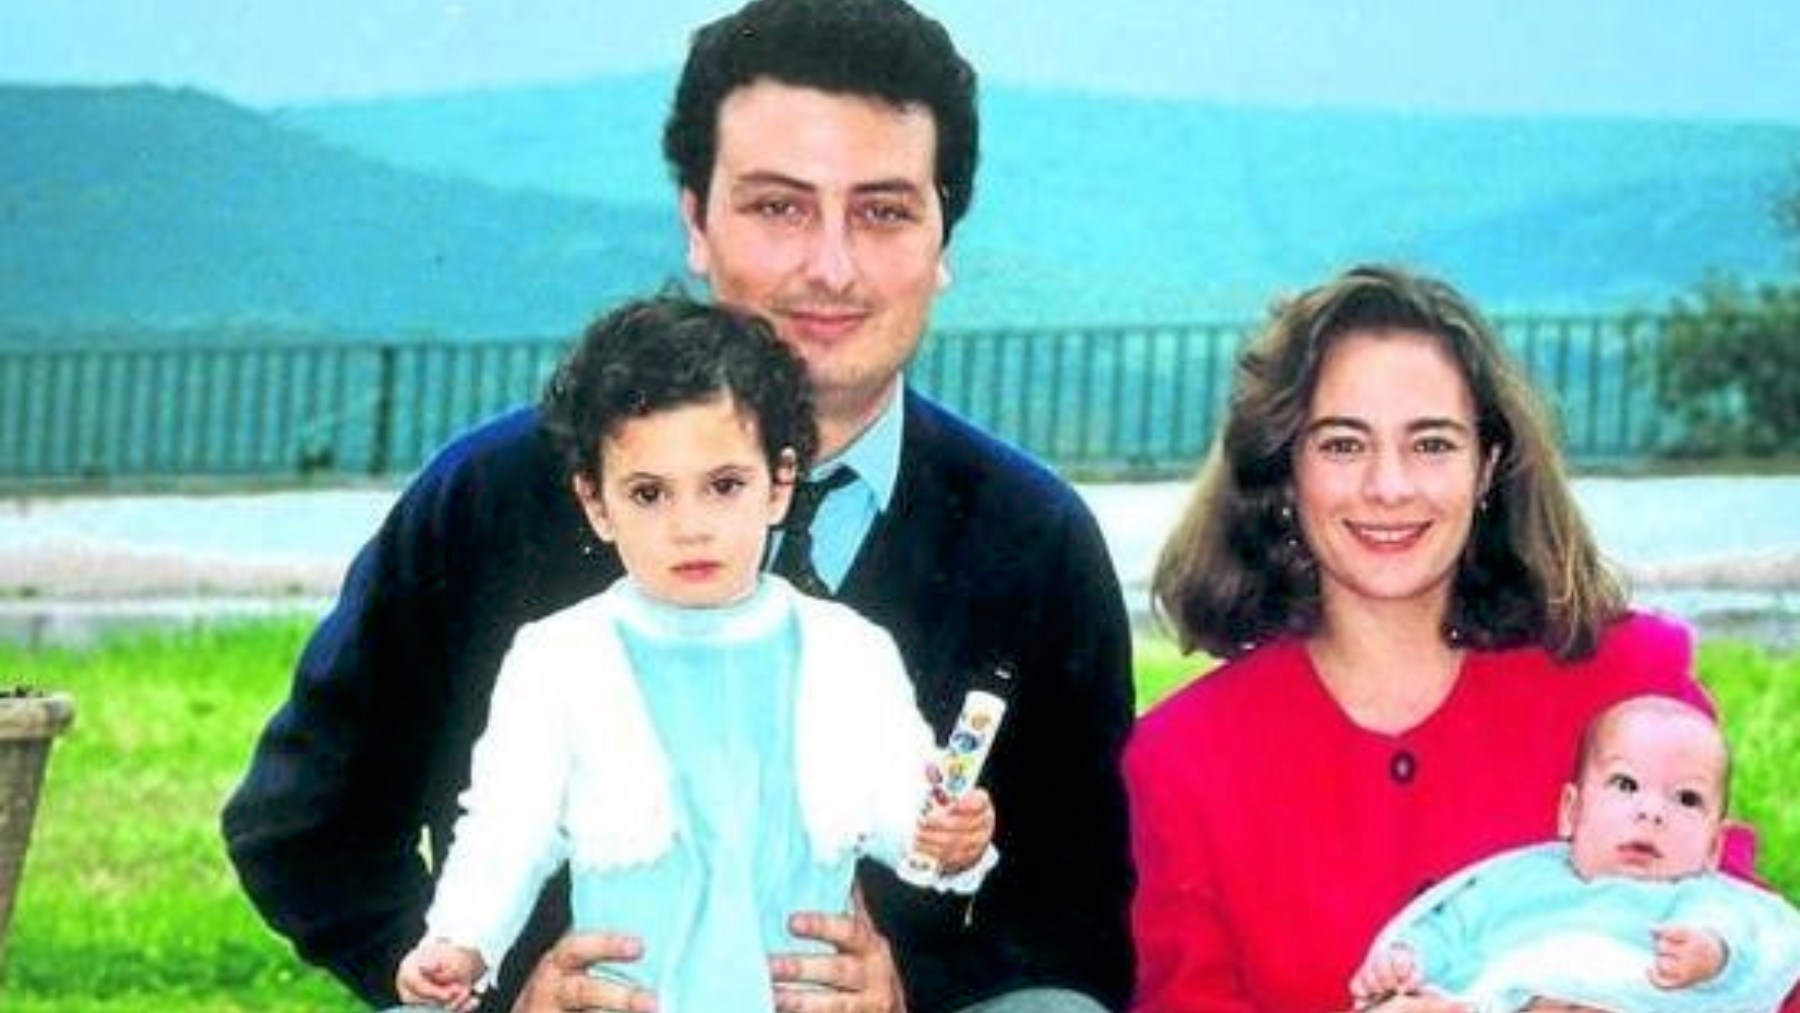 El matrimonio Becerril-García, asesinado por pistoleros de ETA en 1998,